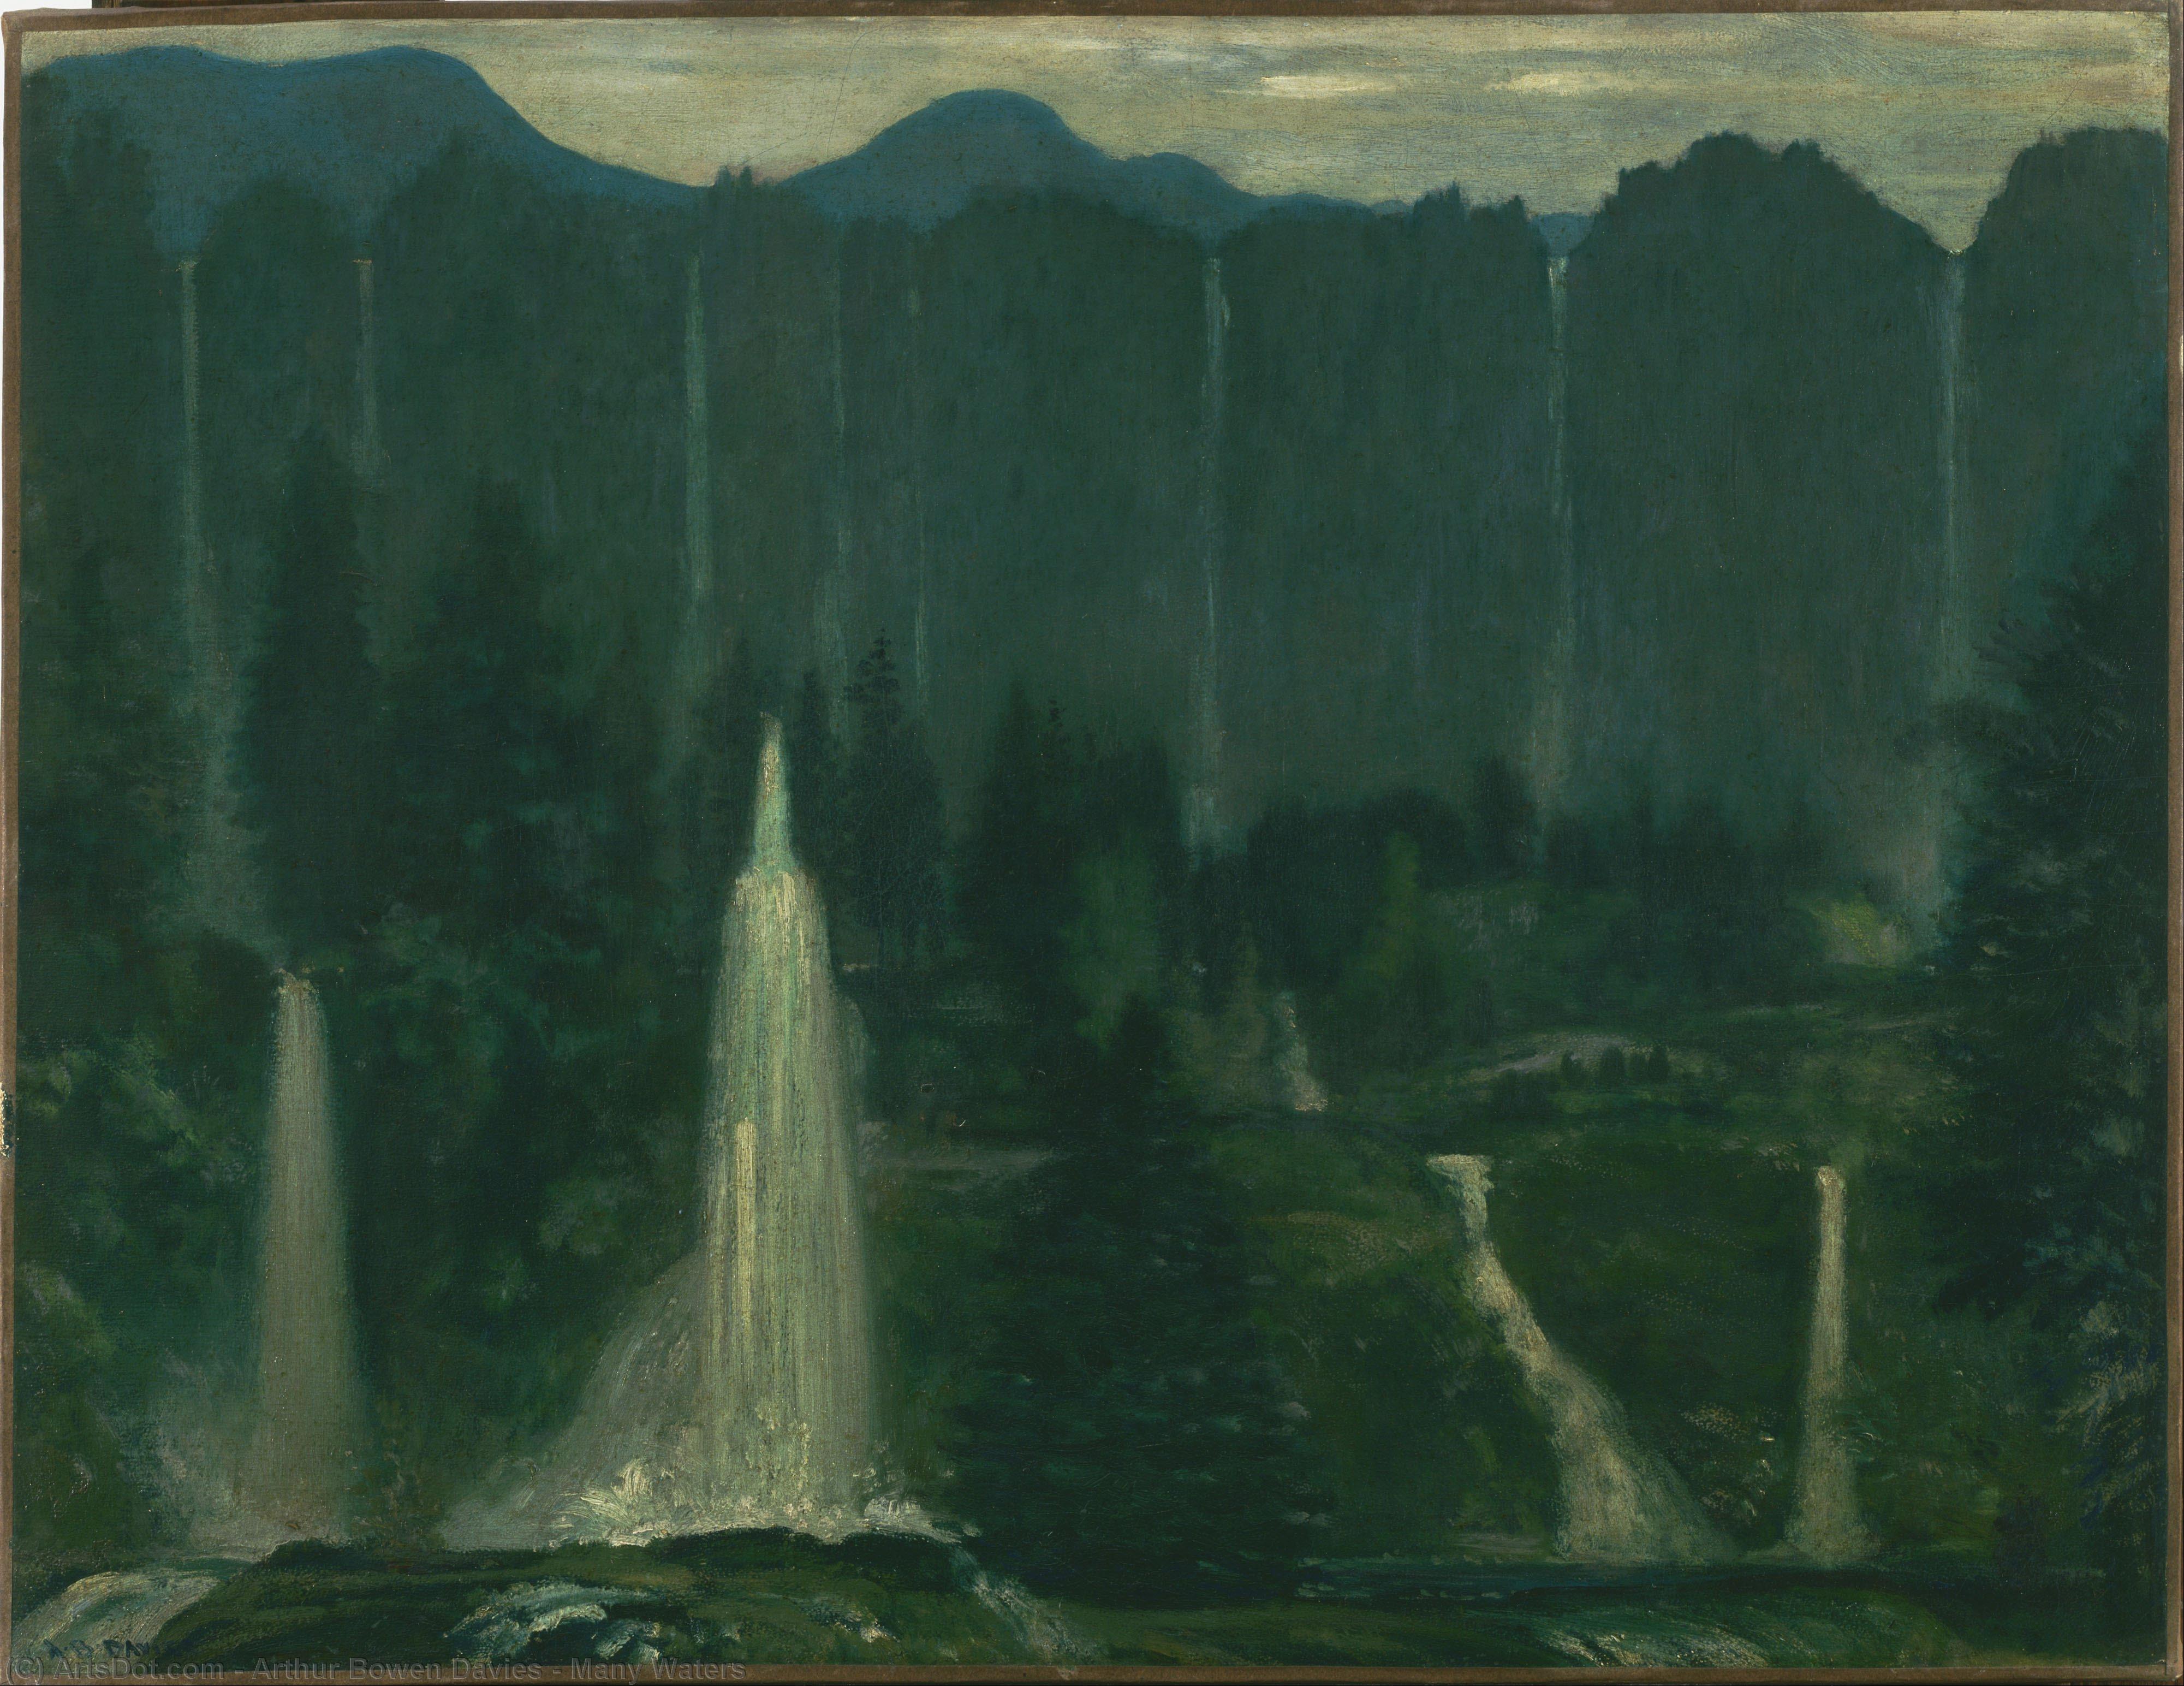 Compra Riproduzioni D'arte Del Museo Molte acque, 1905 di Arthur Bowen Davies (1863-1928, United States) | ArtsDot.com